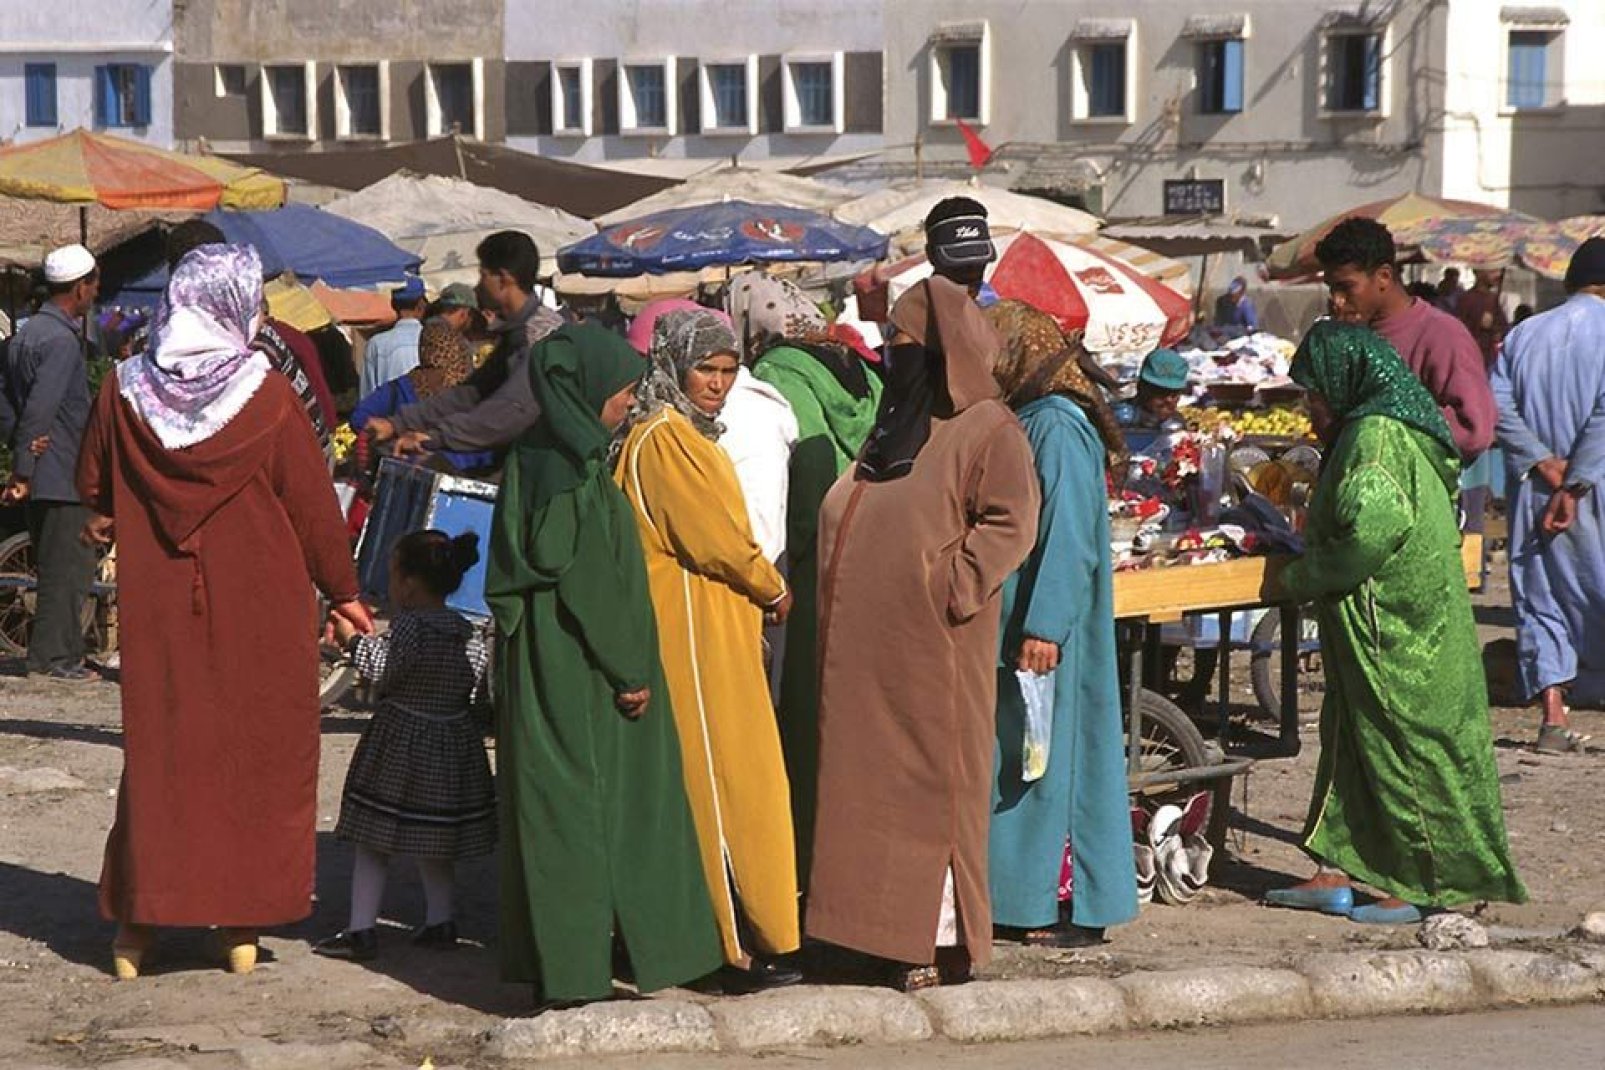 A las mujeres les gusta darse cita en el mercado para charlar y comprar especias, fruta, verdura y pescado.